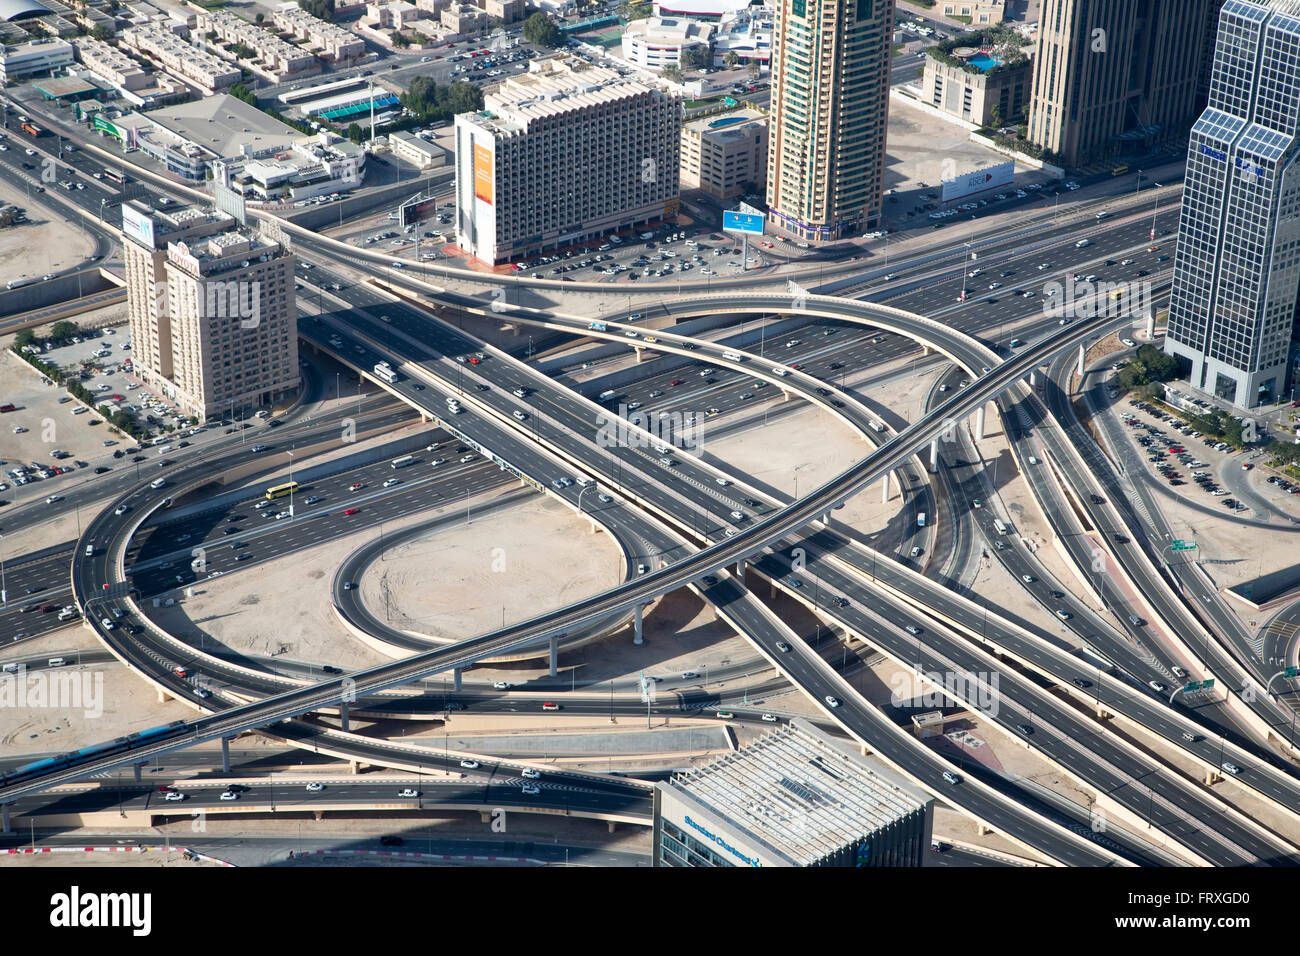 Vista di interscambio stradale 1 di Sheikh Zayed Road e di Doha Street da in alto a piattaforma di osservazione a livello 124 di Burj Khalifa Tower, Dubai, Emirati Arabi Uniti Foto Stock